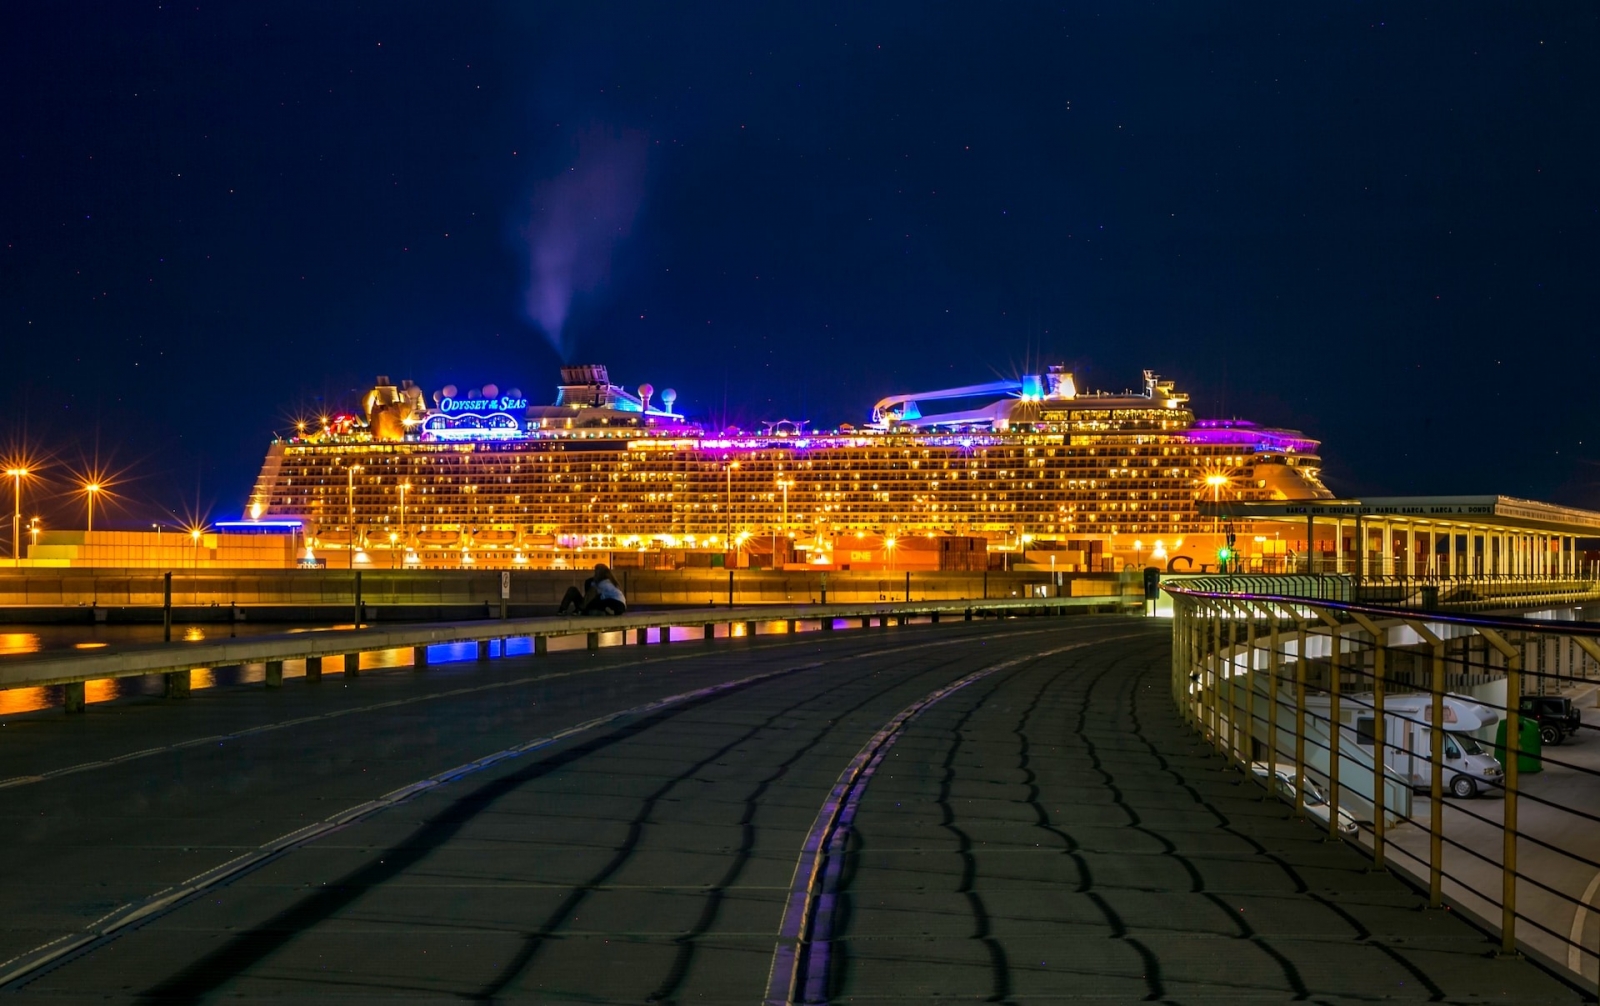 Dans la ville portuaire animée de Valence, un colossal bateau de croisière domine l'horizon nocturne, sa façade illuminée se reflétant sur les eaux scintillantes.